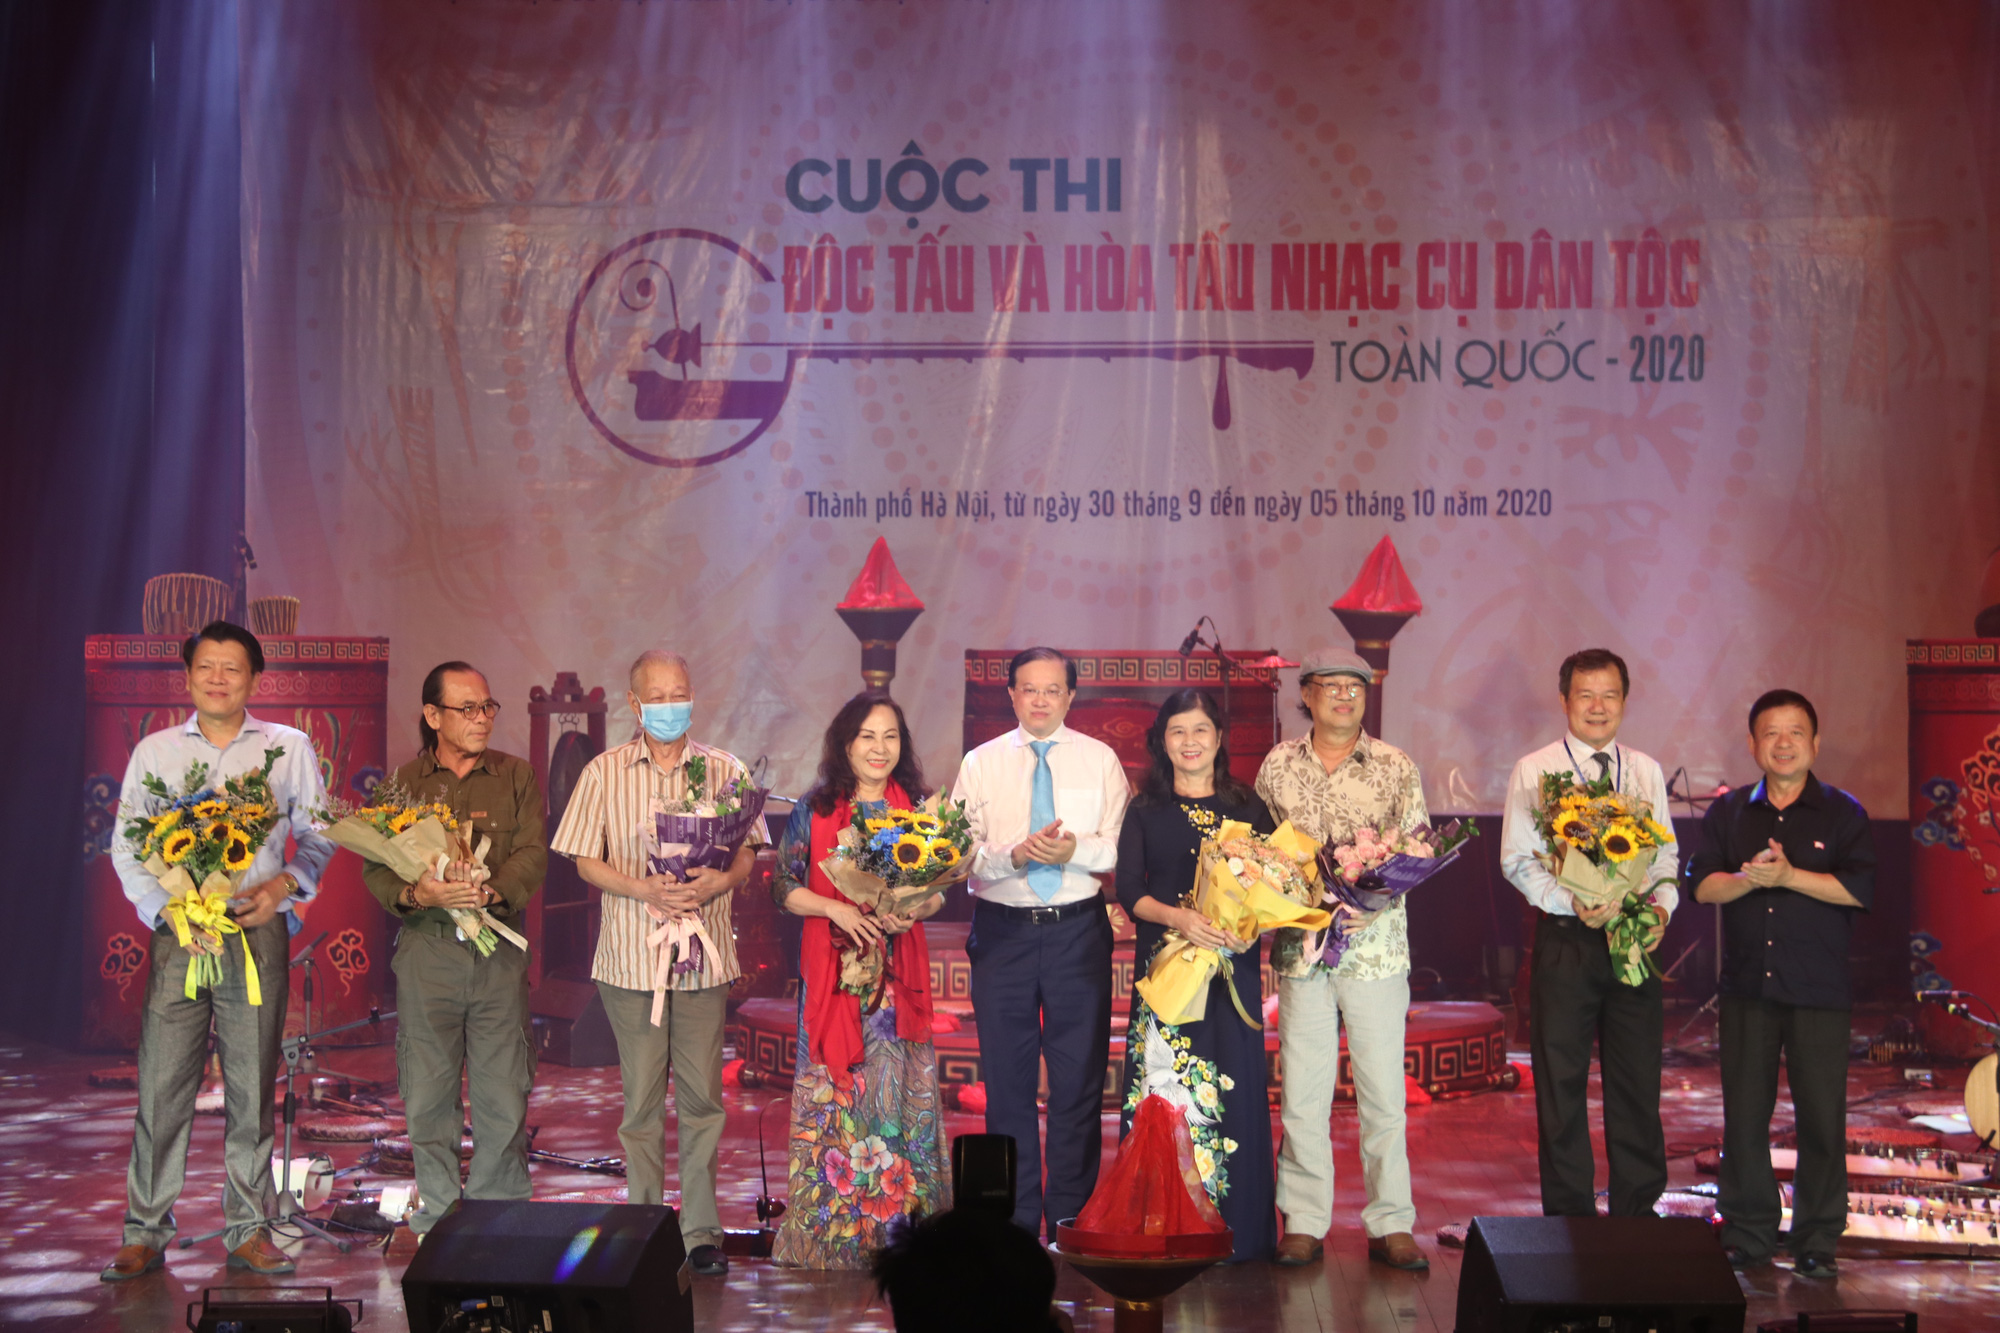 Khai mạc Cuộc thi Độc tấu và Hòa tấu nhạc cụ dân tộc toàn quốc 2020 tại Hà Nội - Ảnh 1.